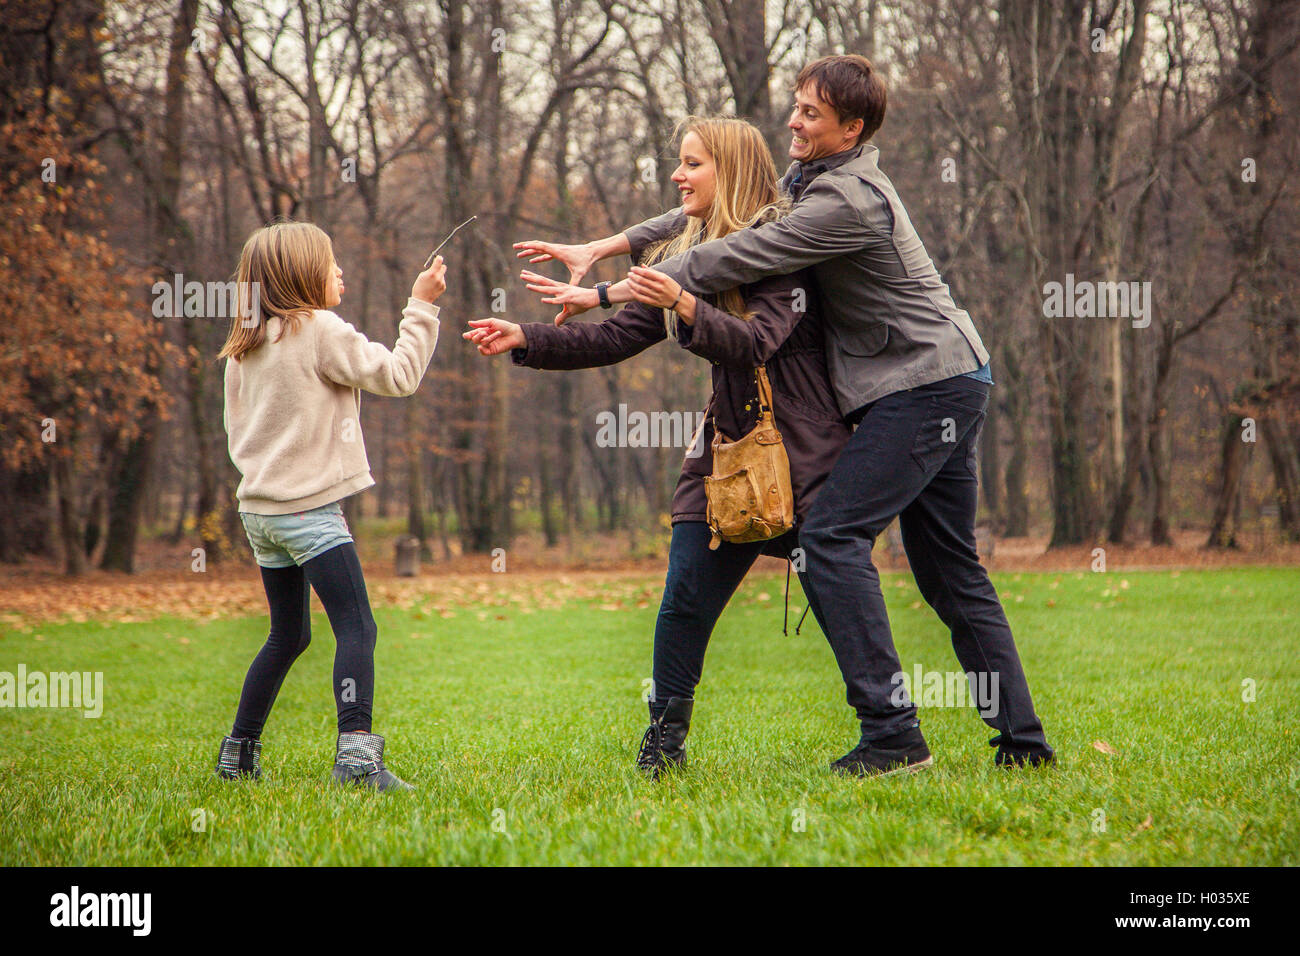 ZAGREB, CROATIA - 15 NOVEMBER 2015: Family of three play around in park. Stock Photo